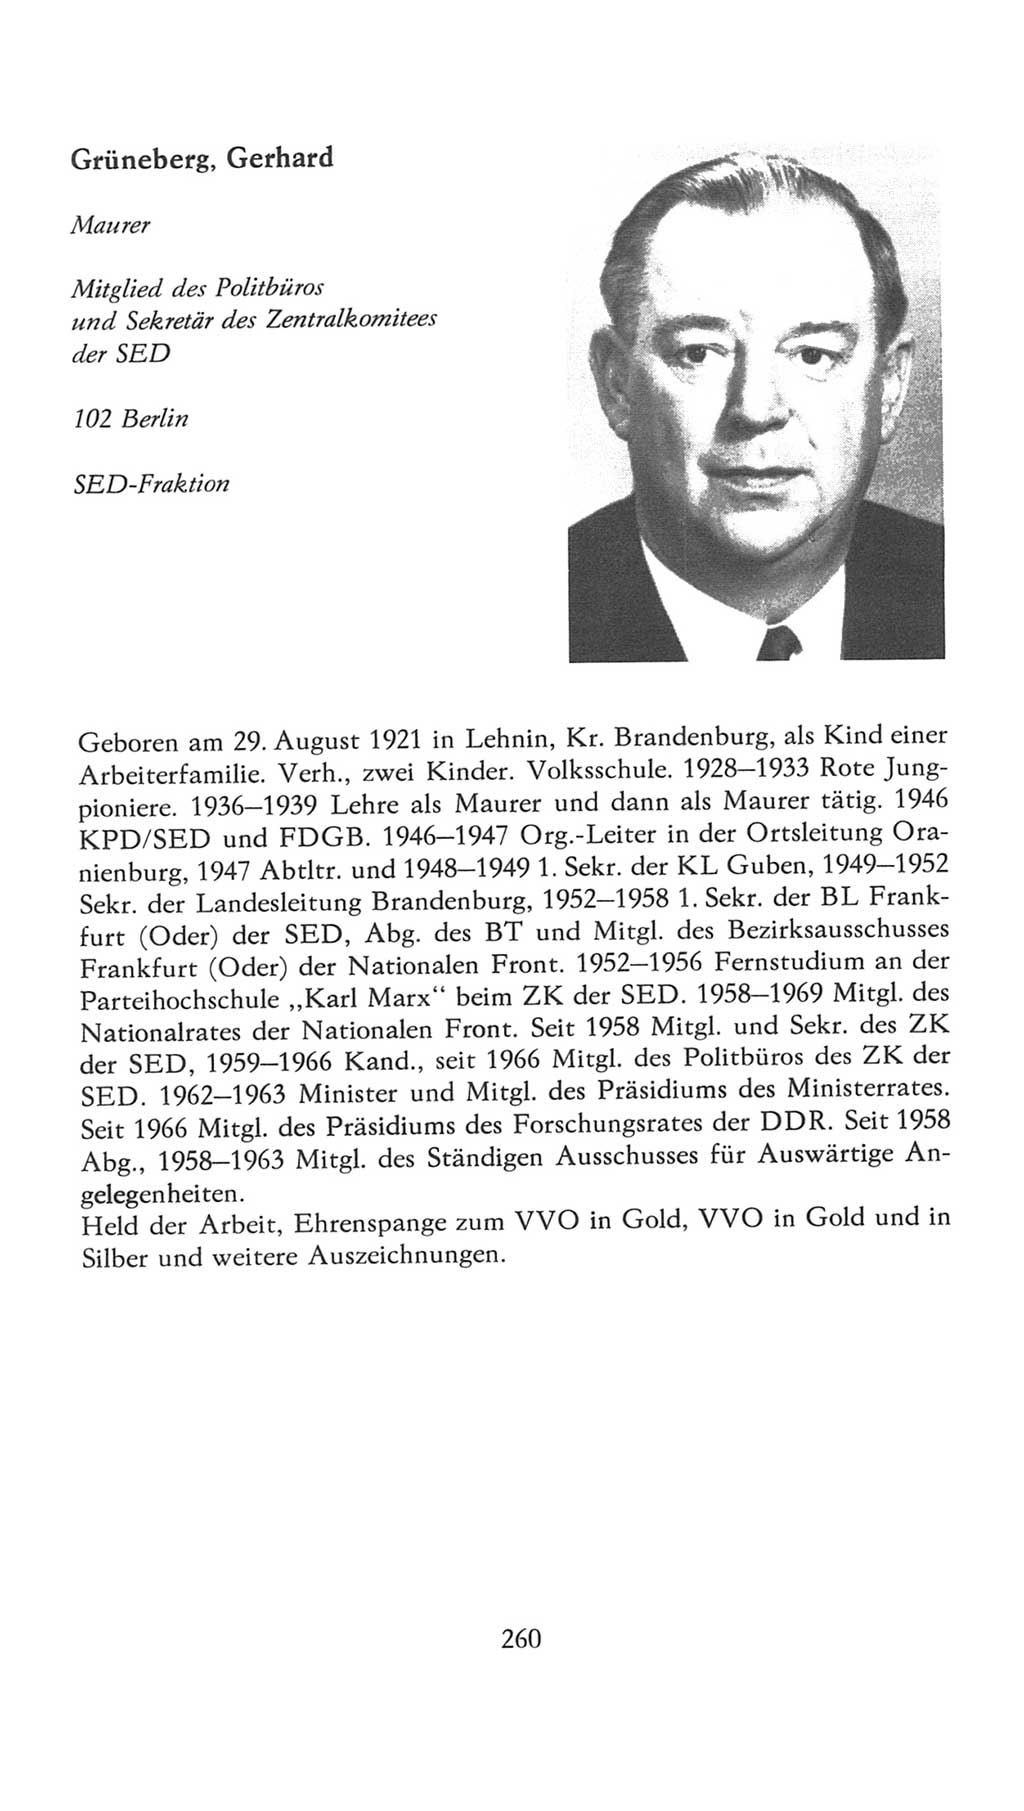 Volkskammer (VK) der Deutschen Demokratischen Republik (DDR), 7. Wahlperiode 1976-1981, Seite 260 (VK. DDR 7. WP. 1976-1981, S. 260)